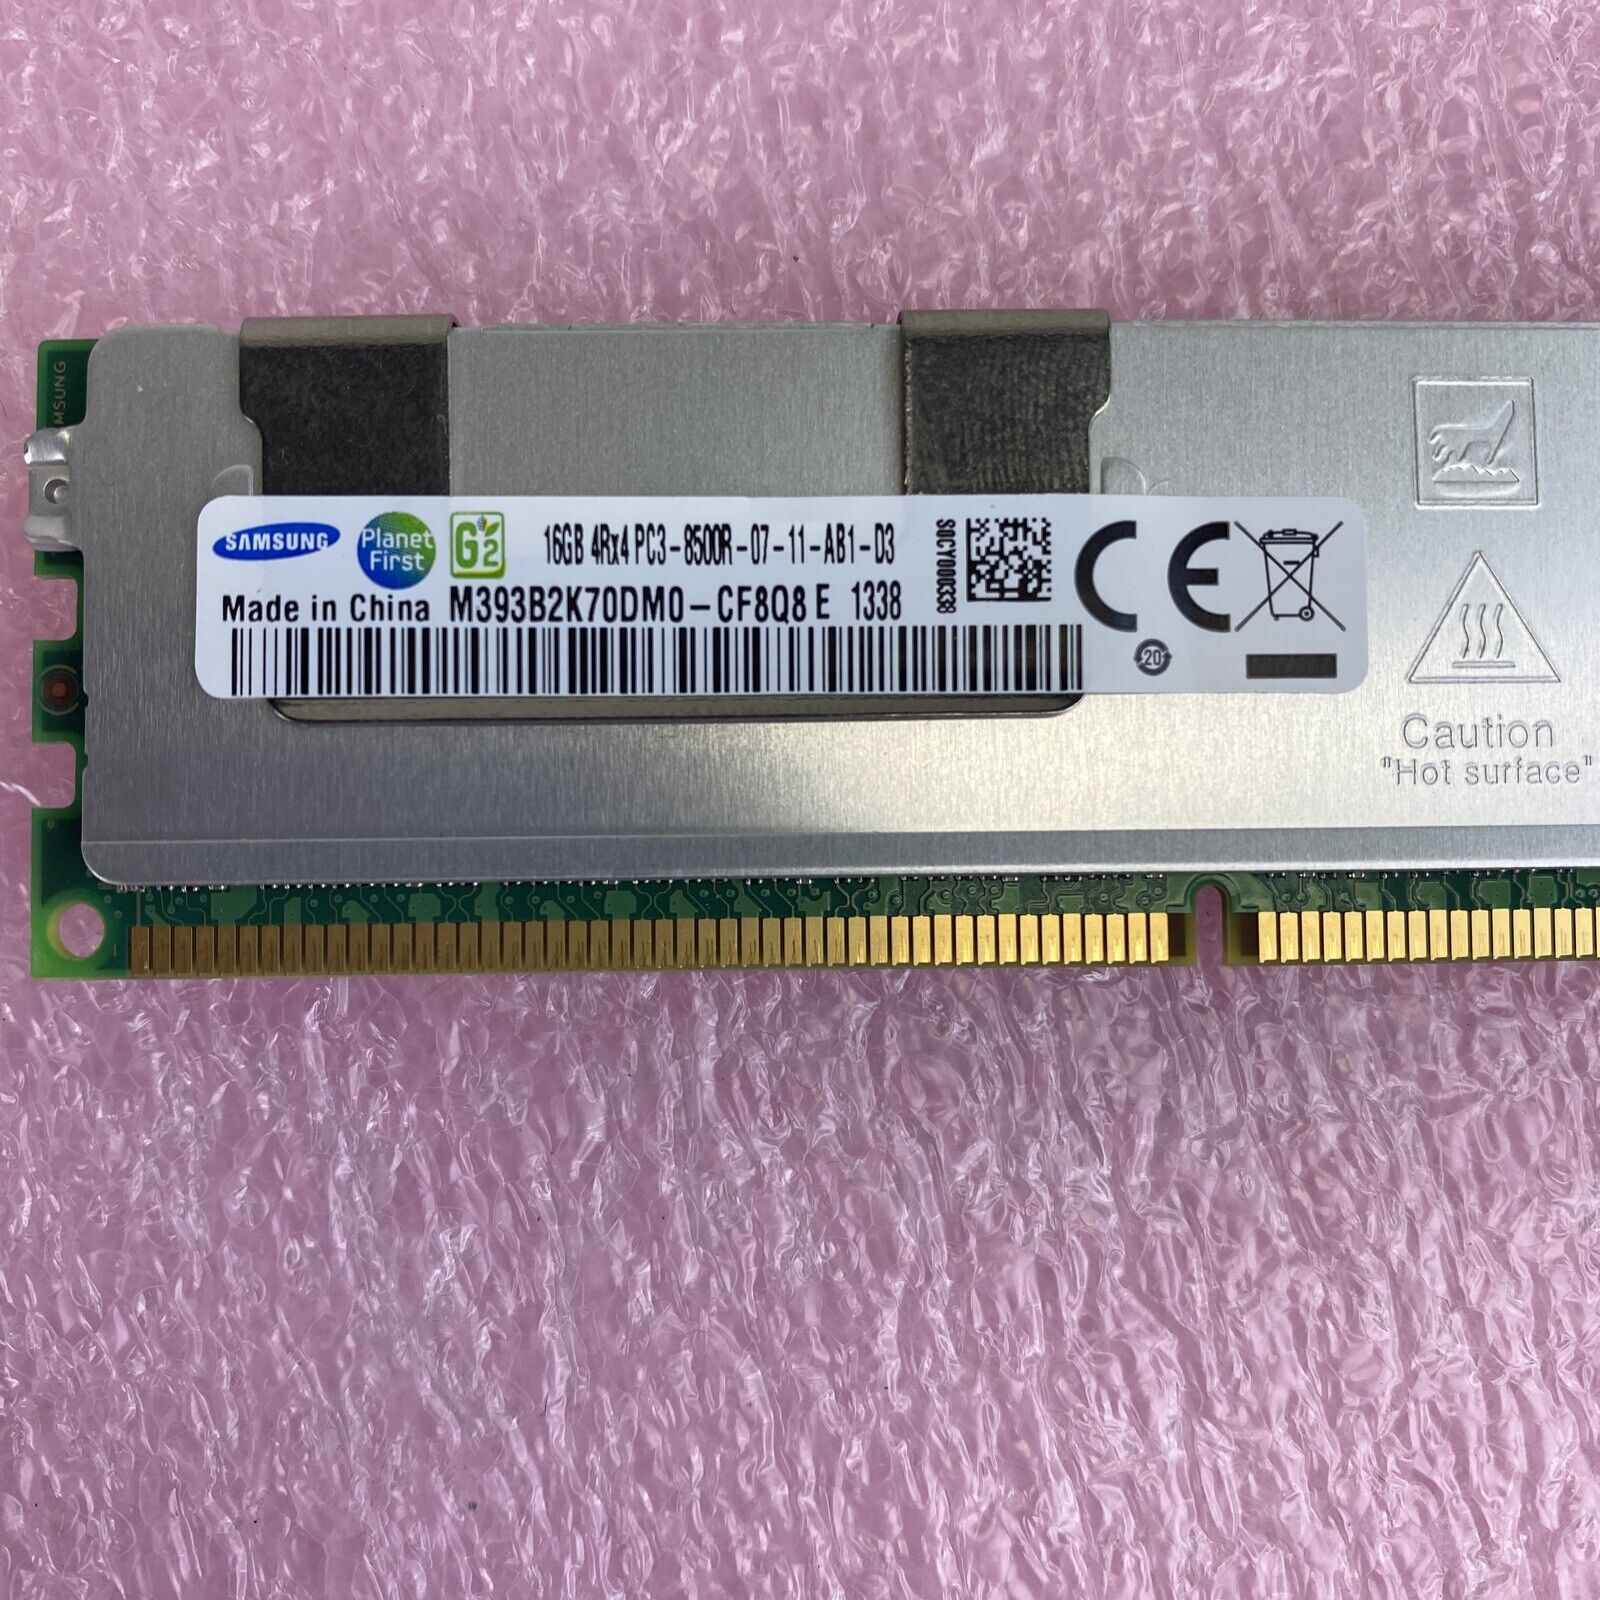 Samsung M393B2K70DM0-CF8Q8 16GB DDR3 PC3-8500 CL7 DIMM RAM module